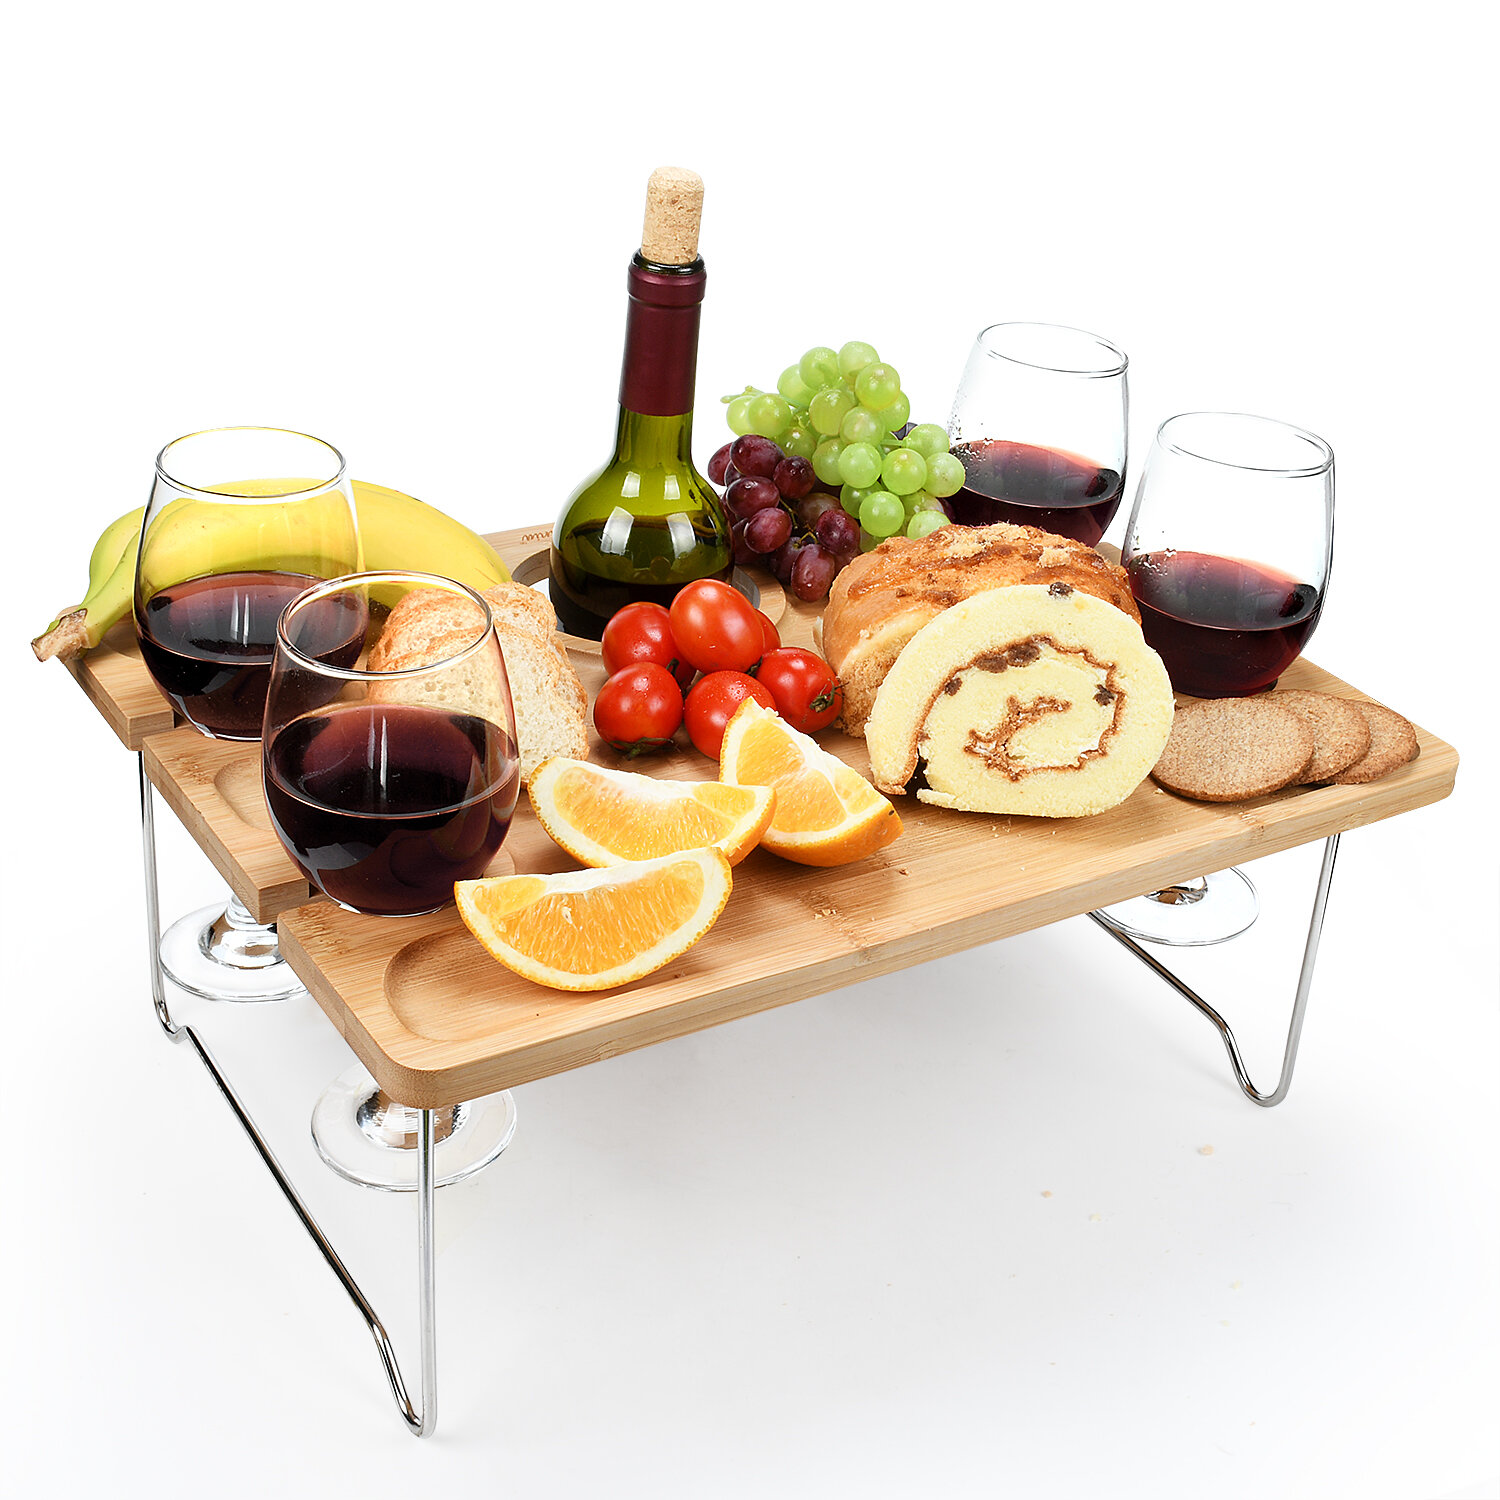 Details about   NEW Wine Bottle & Wine Glass Holder Set Camping Picnics Garden Dining Vine Drink 